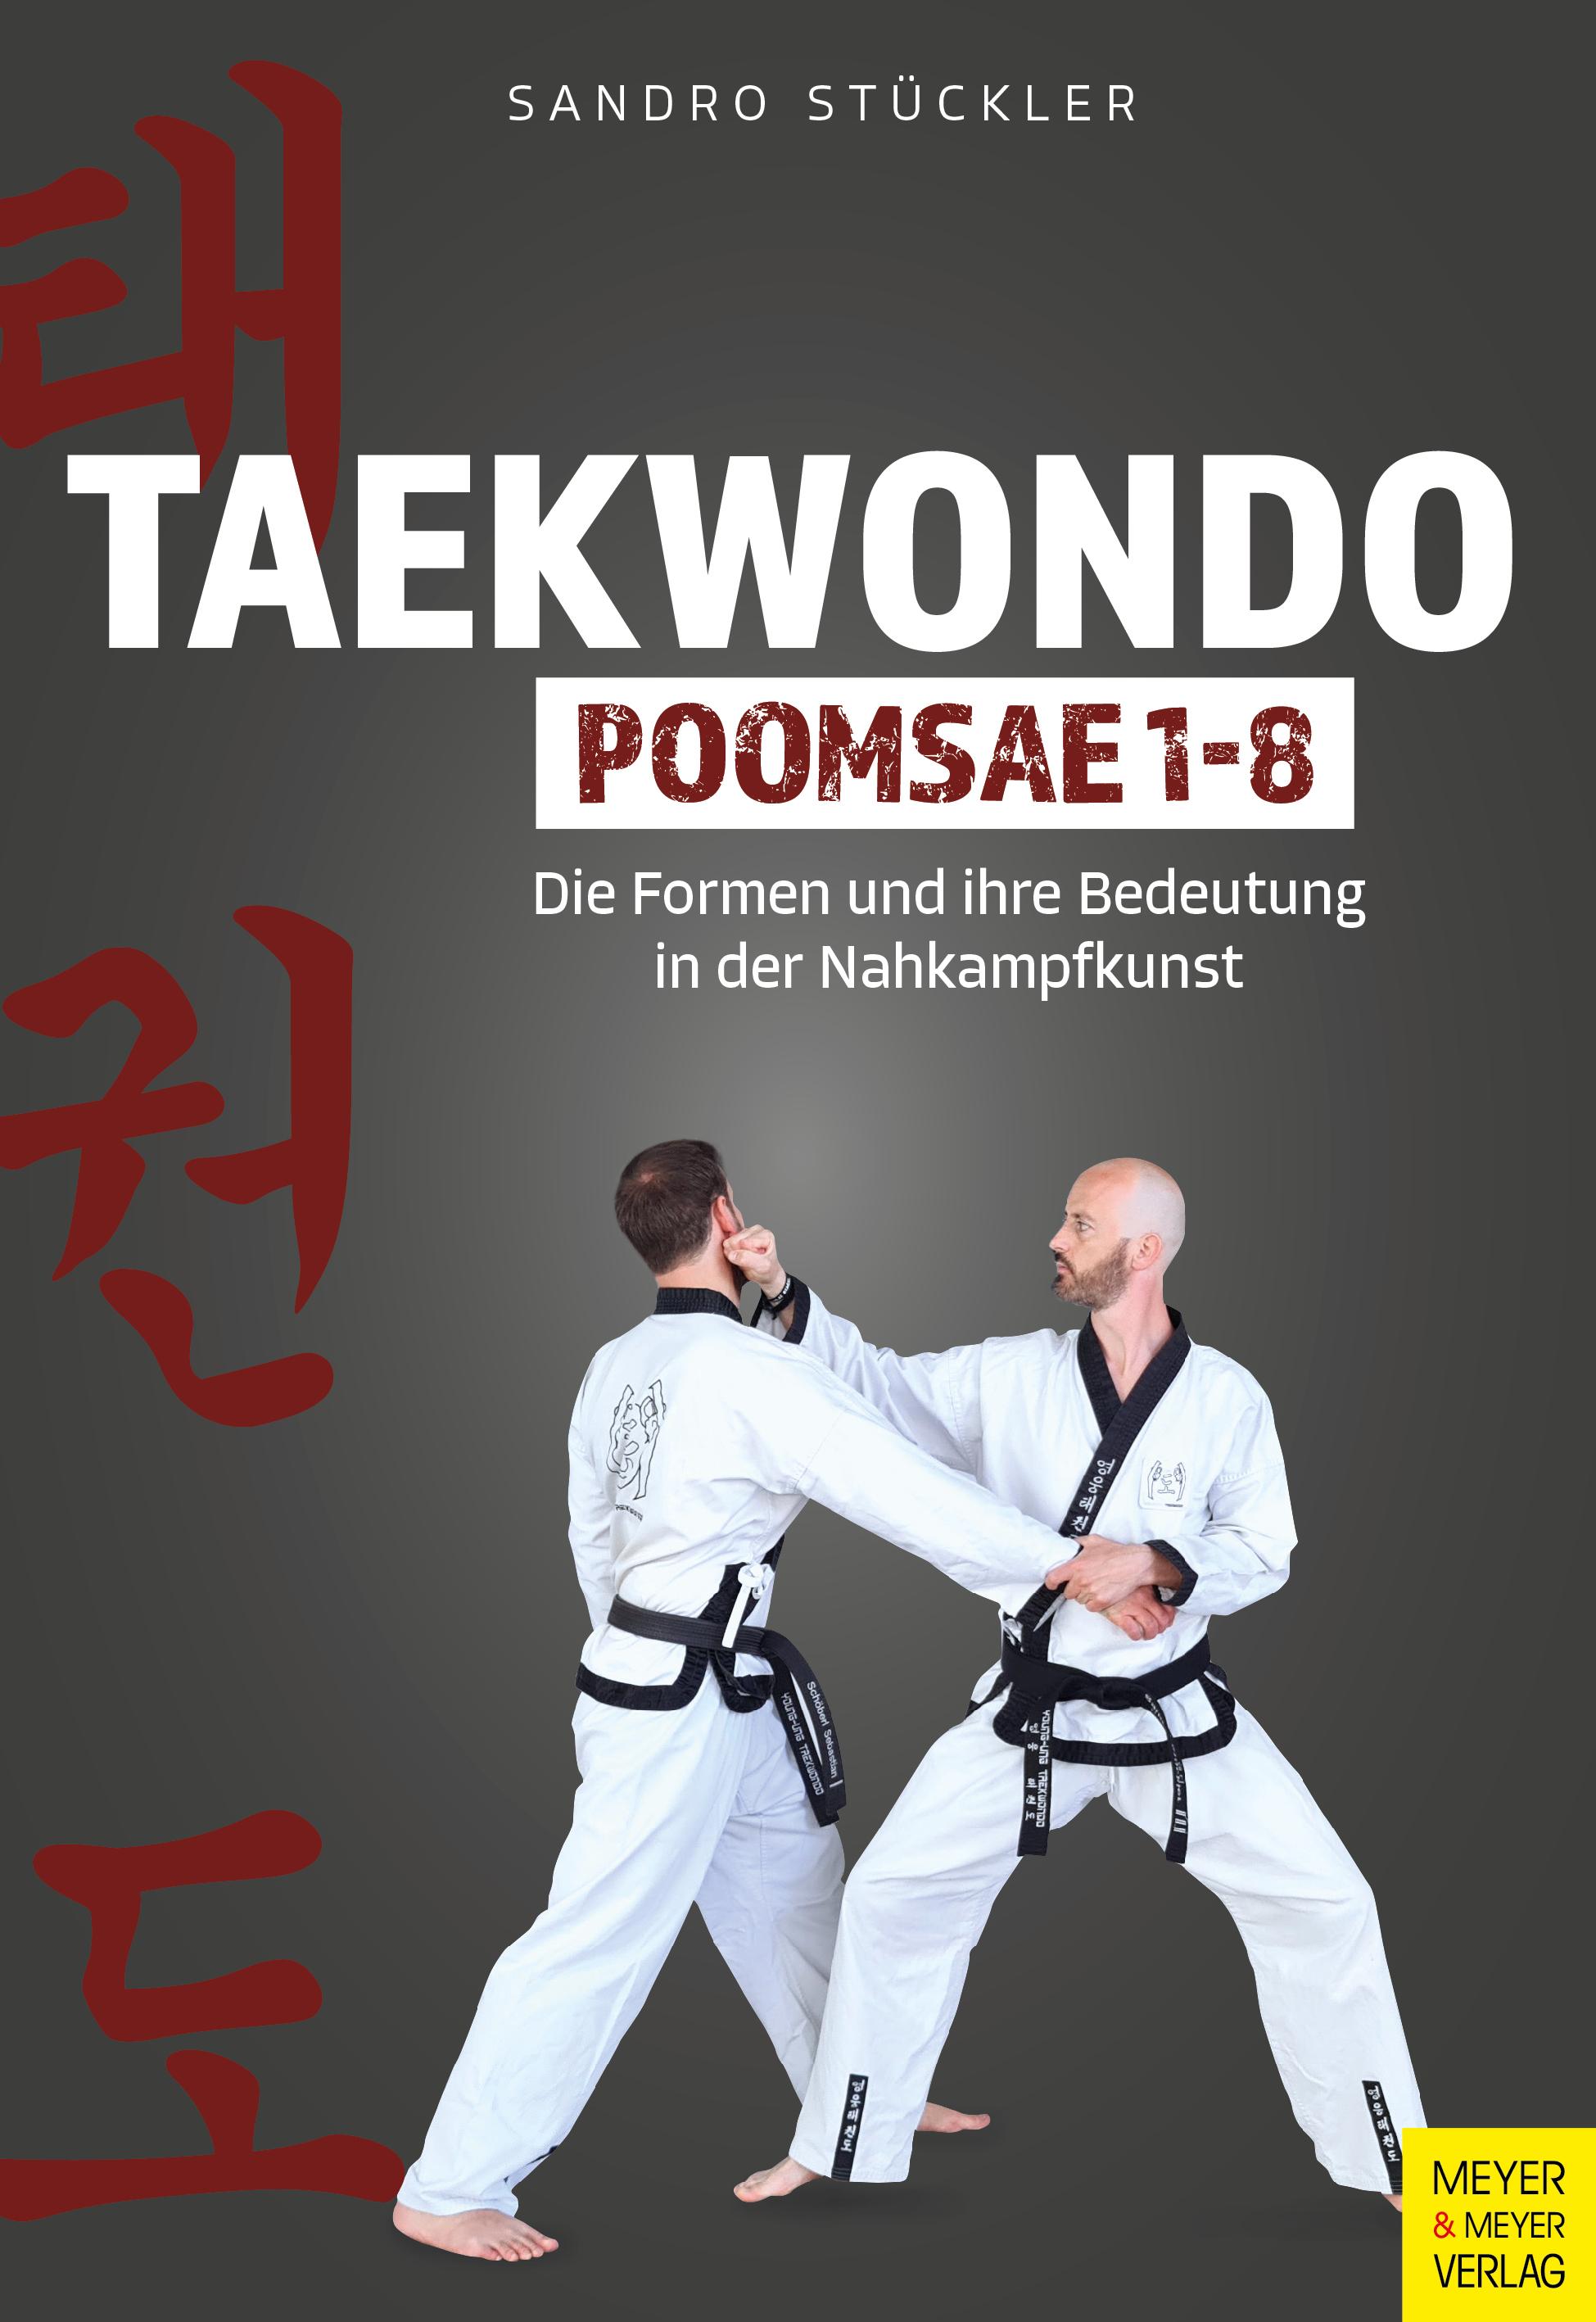 Taekwondo Poomsae 1-8 Die Formen und ihre Bedeutung in der Nahkampfkunst